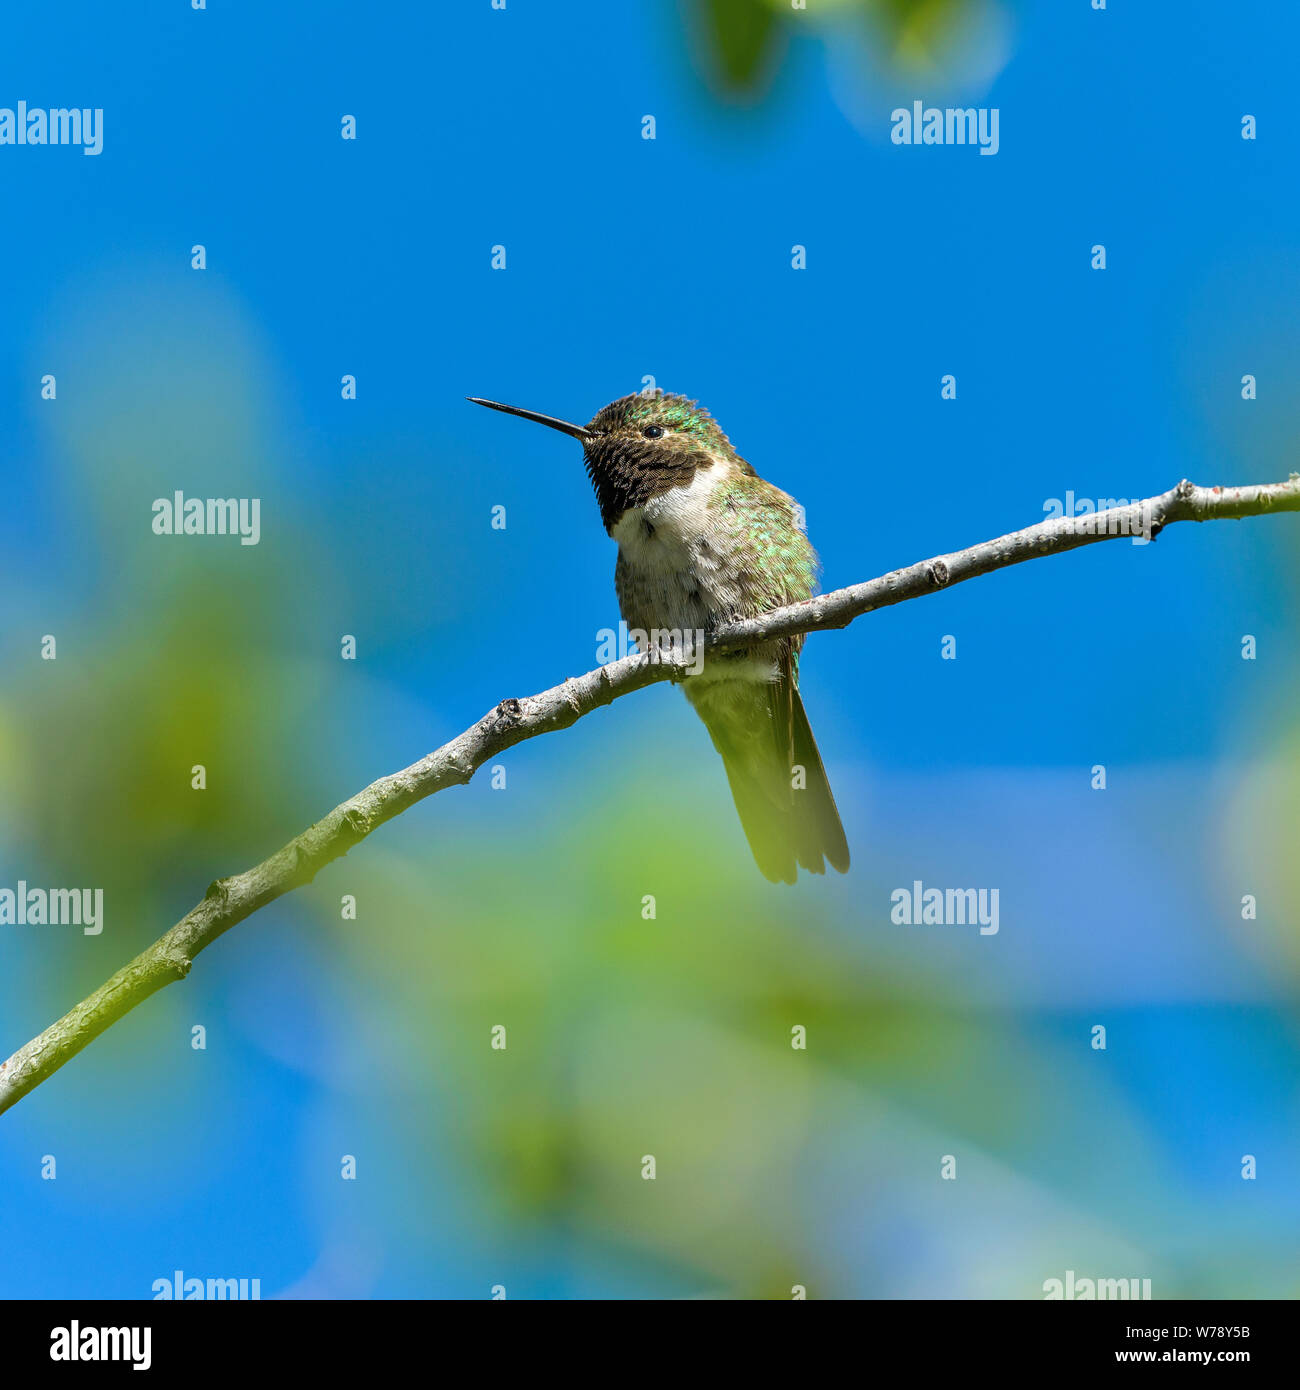 Hummingbird printemps - un petit mâle mignon à queue large mouche, avec ses plumes au cou à la tombée de la nuit, perché sur une branche d'un grand arbuste. Pnmr, CO. Banque D'Images